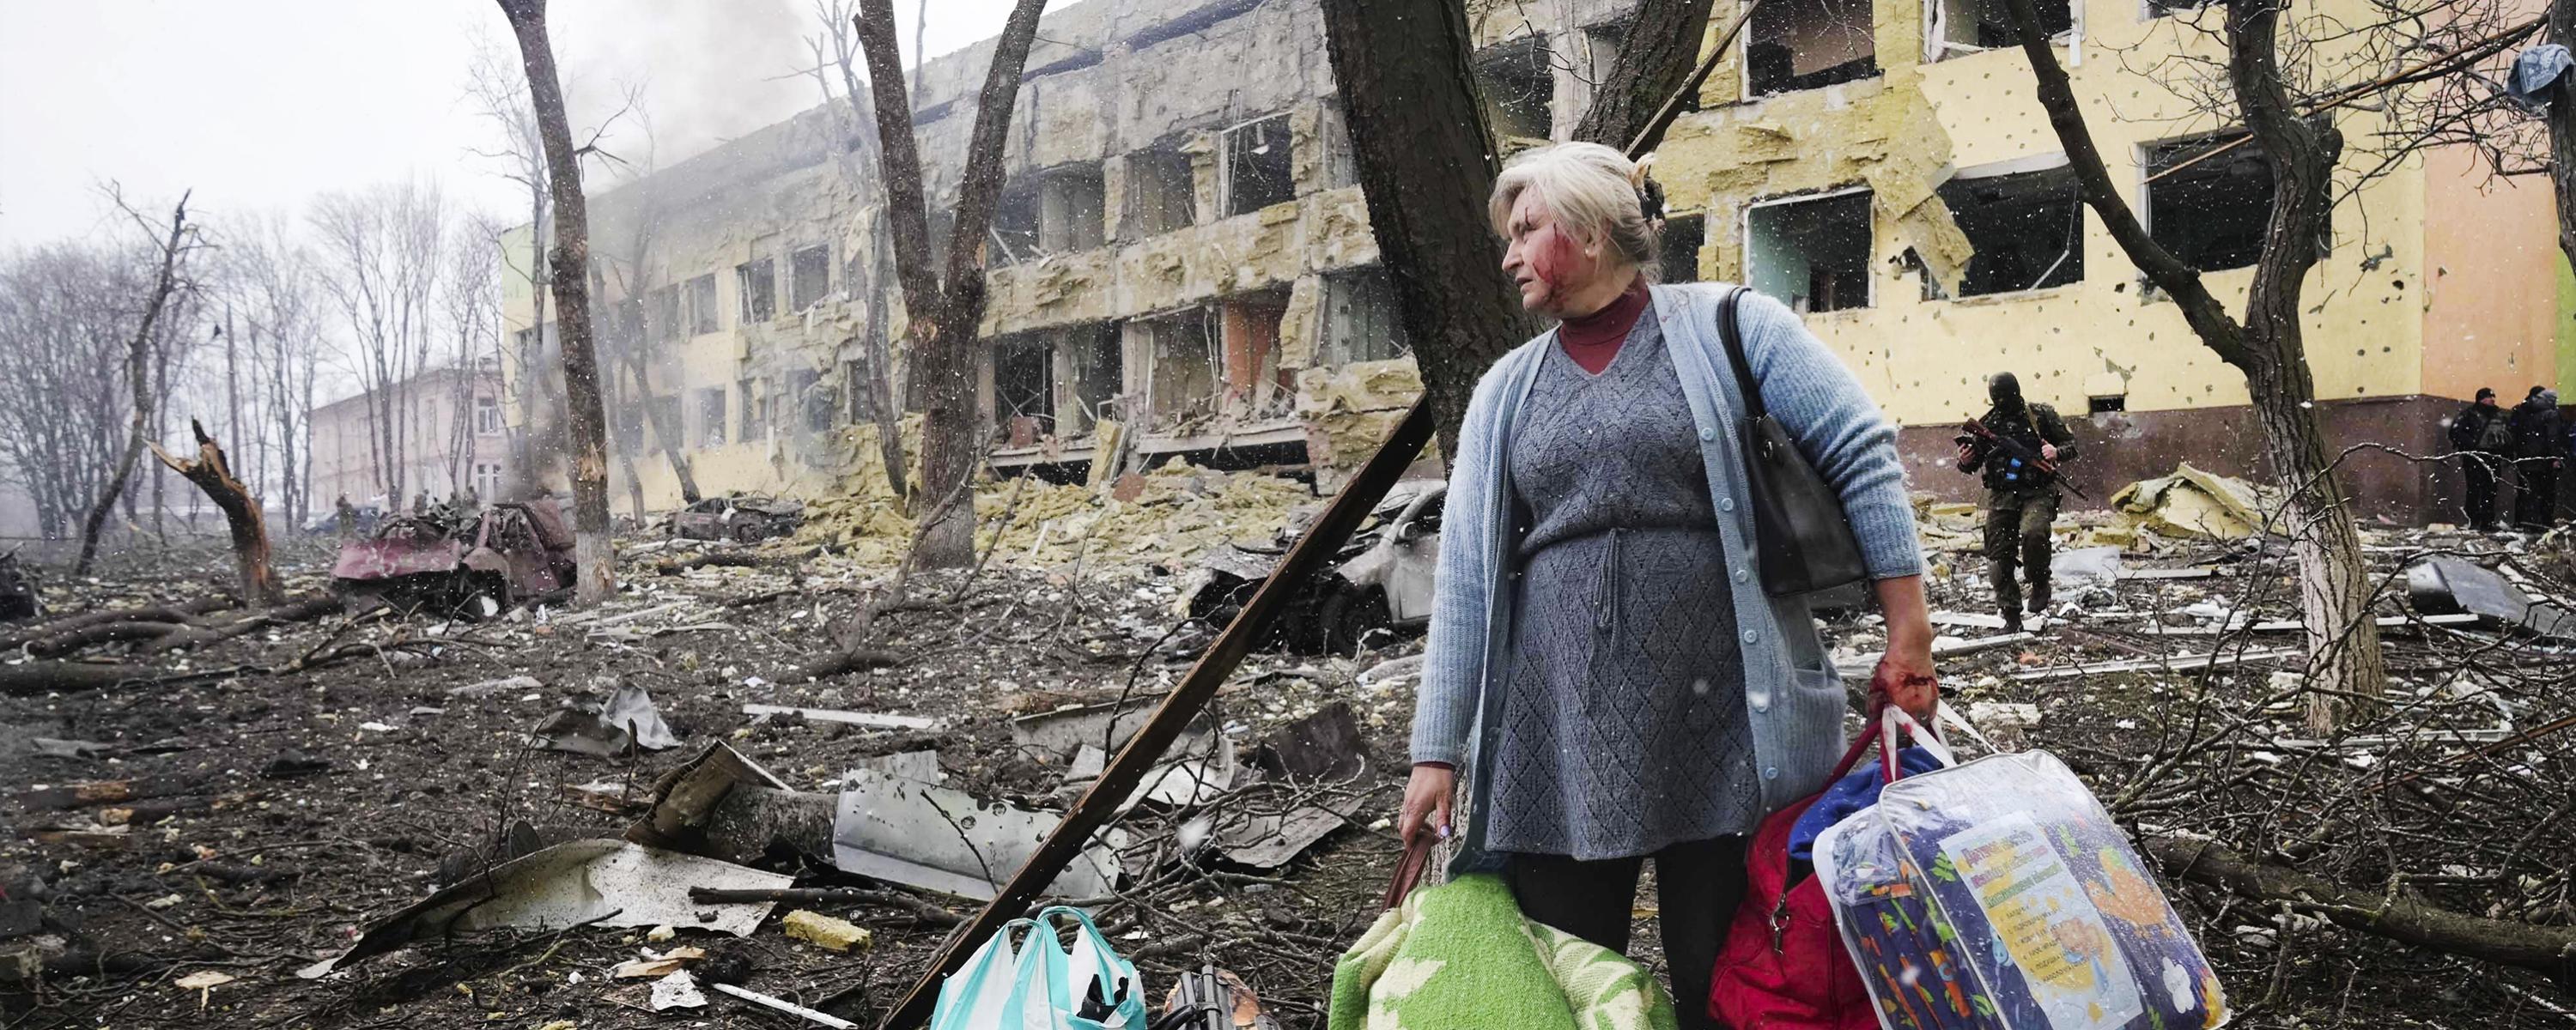 Eine Frau mit Taschen in der Hand verlässt ihr zerstörtes Wohngebäude.